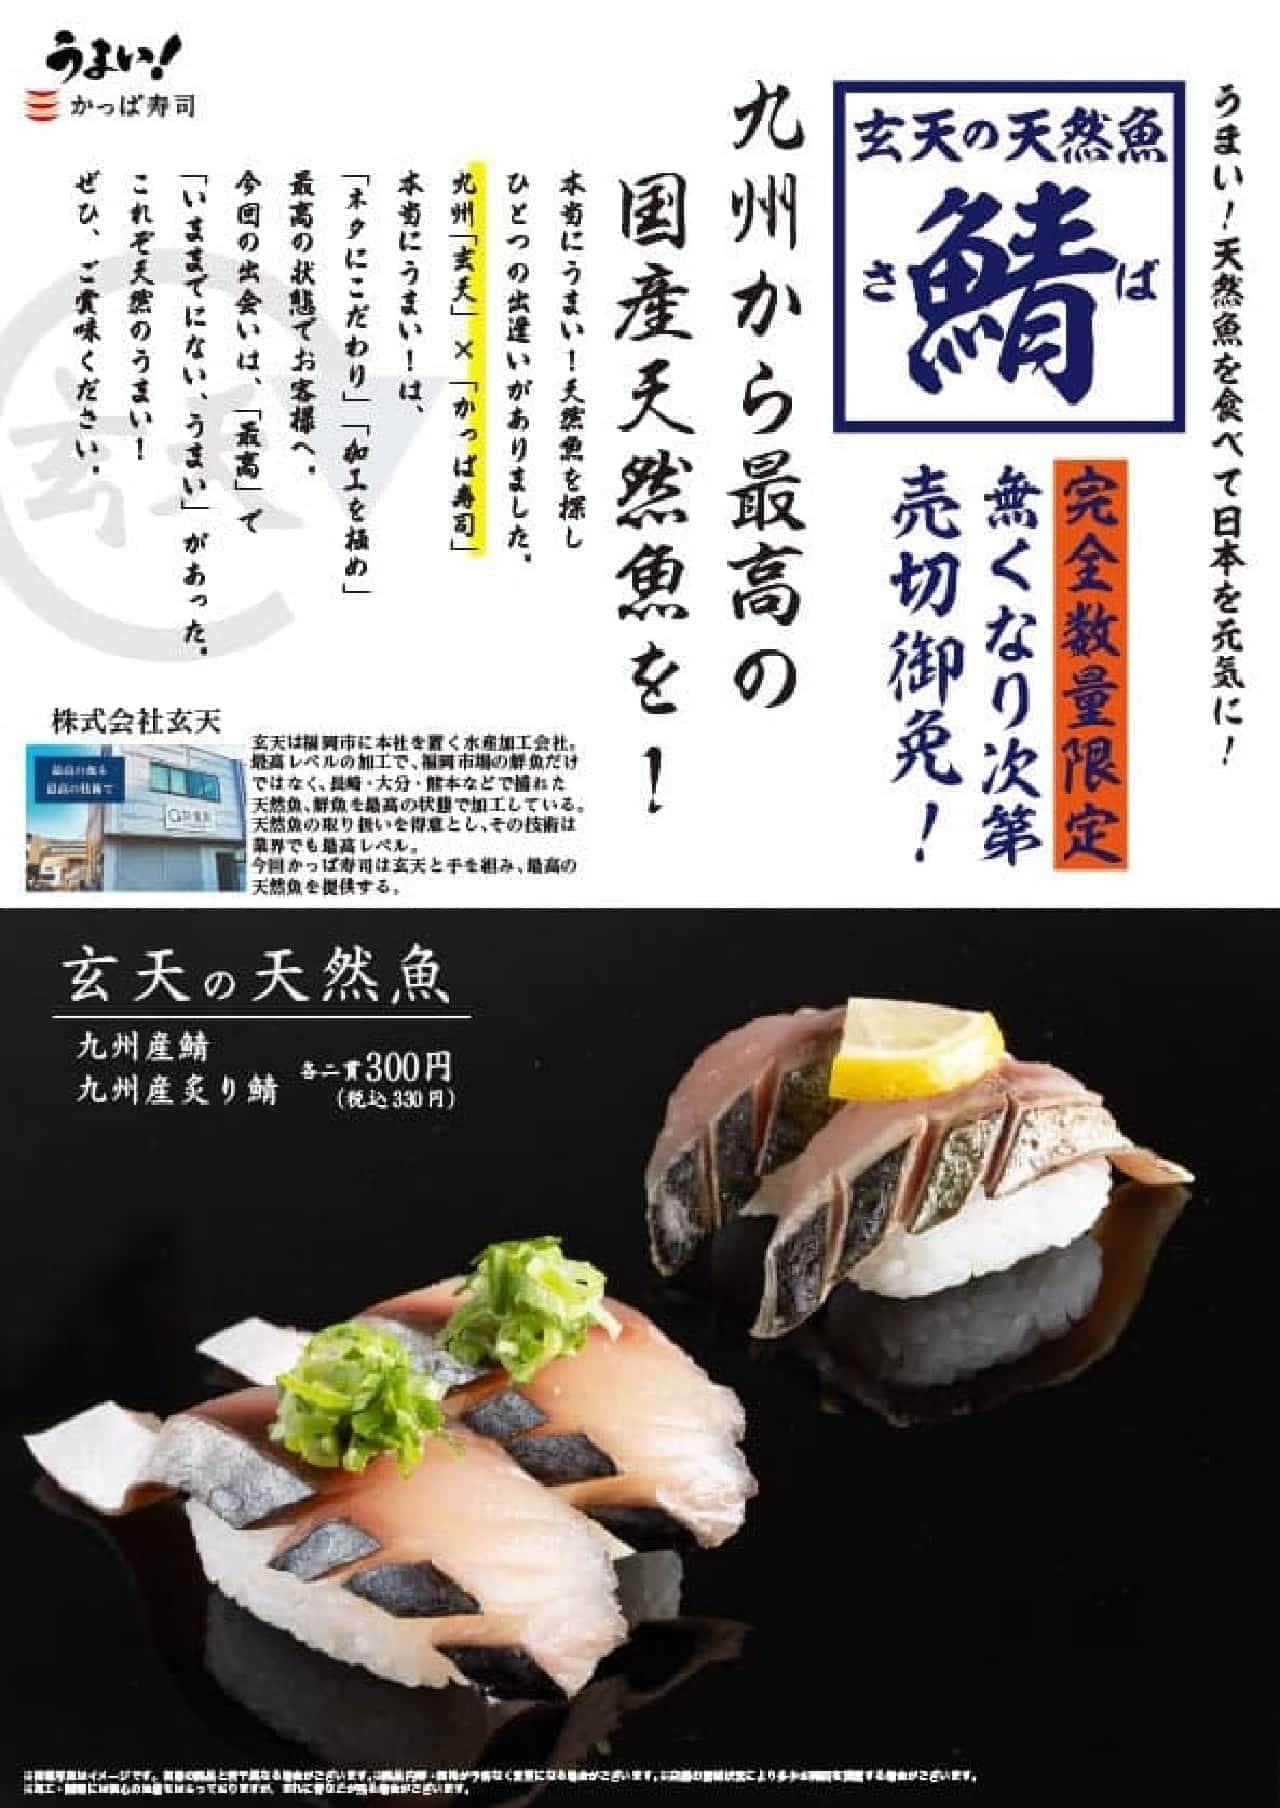 かっぱ寿司「九州産鯖」「九州産炙り鯖」